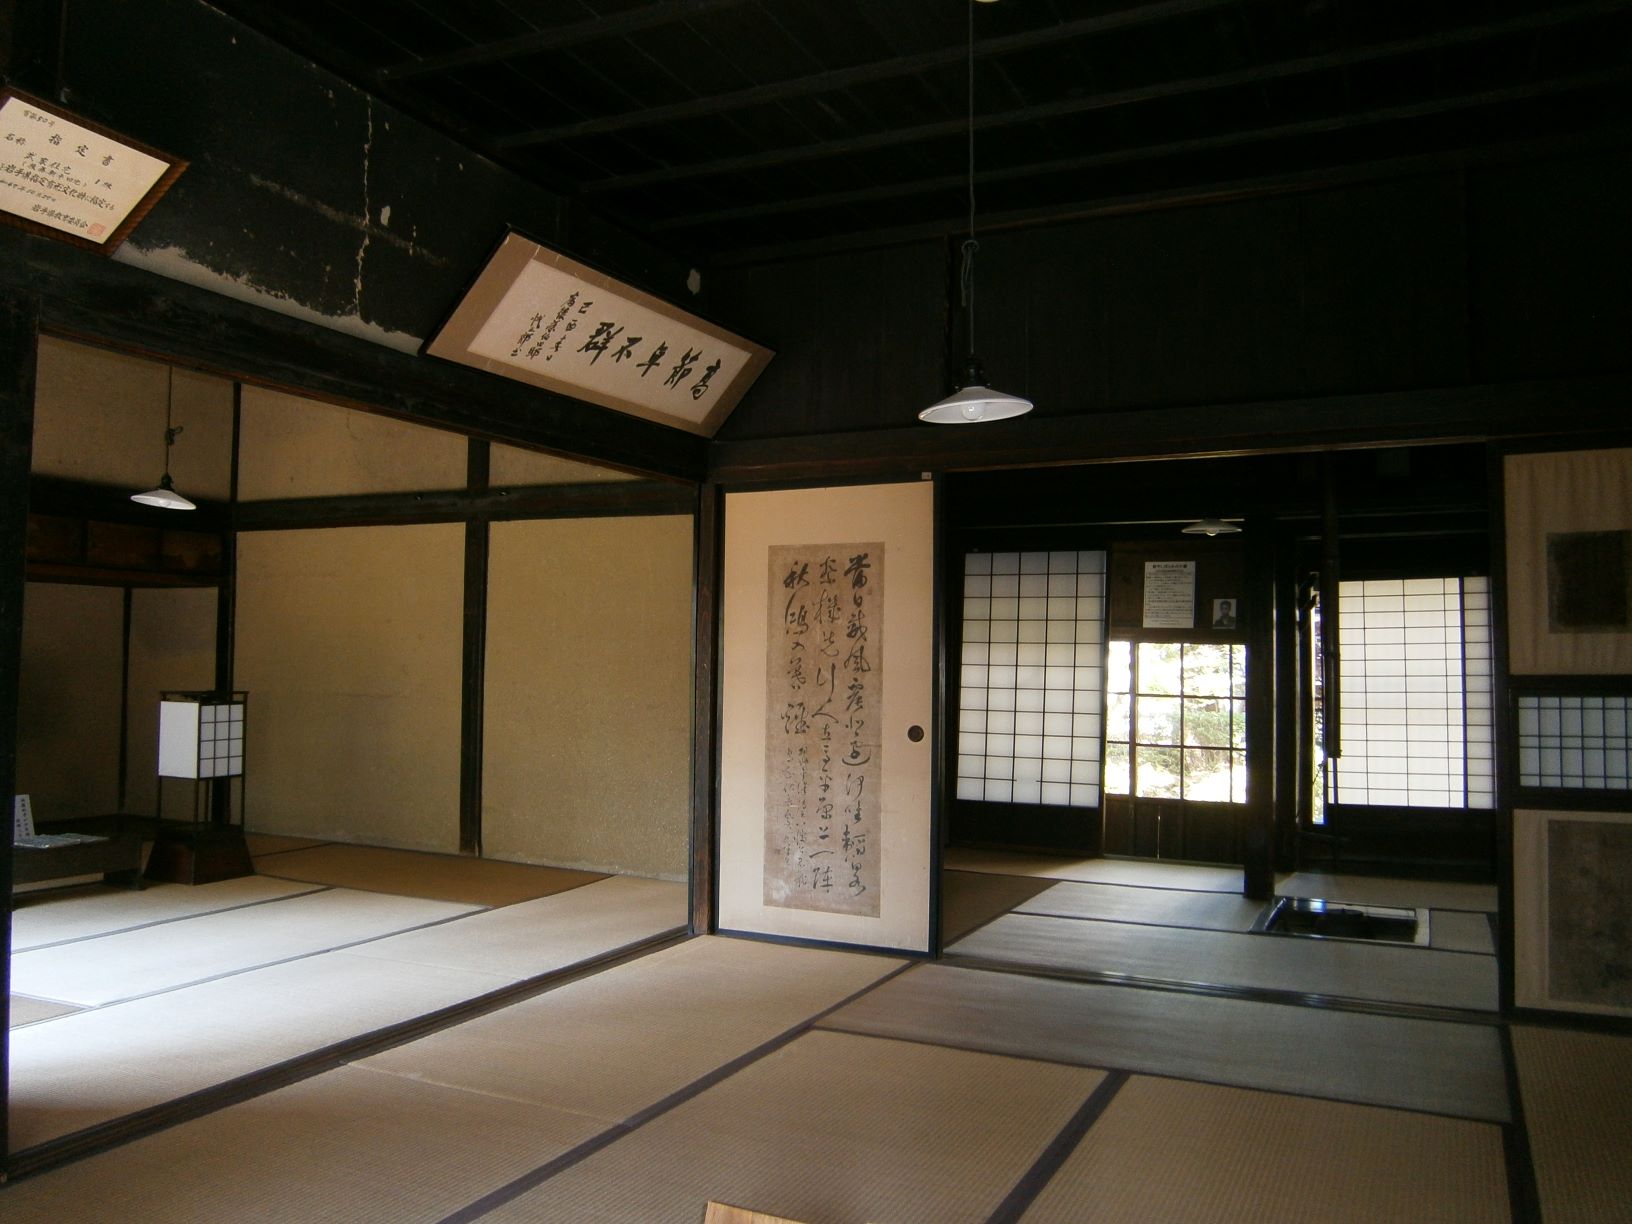 襖に掛け軸があり、畳みの敷かれた部屋が3部屋続いている後藤新平旧宅の和室の写真